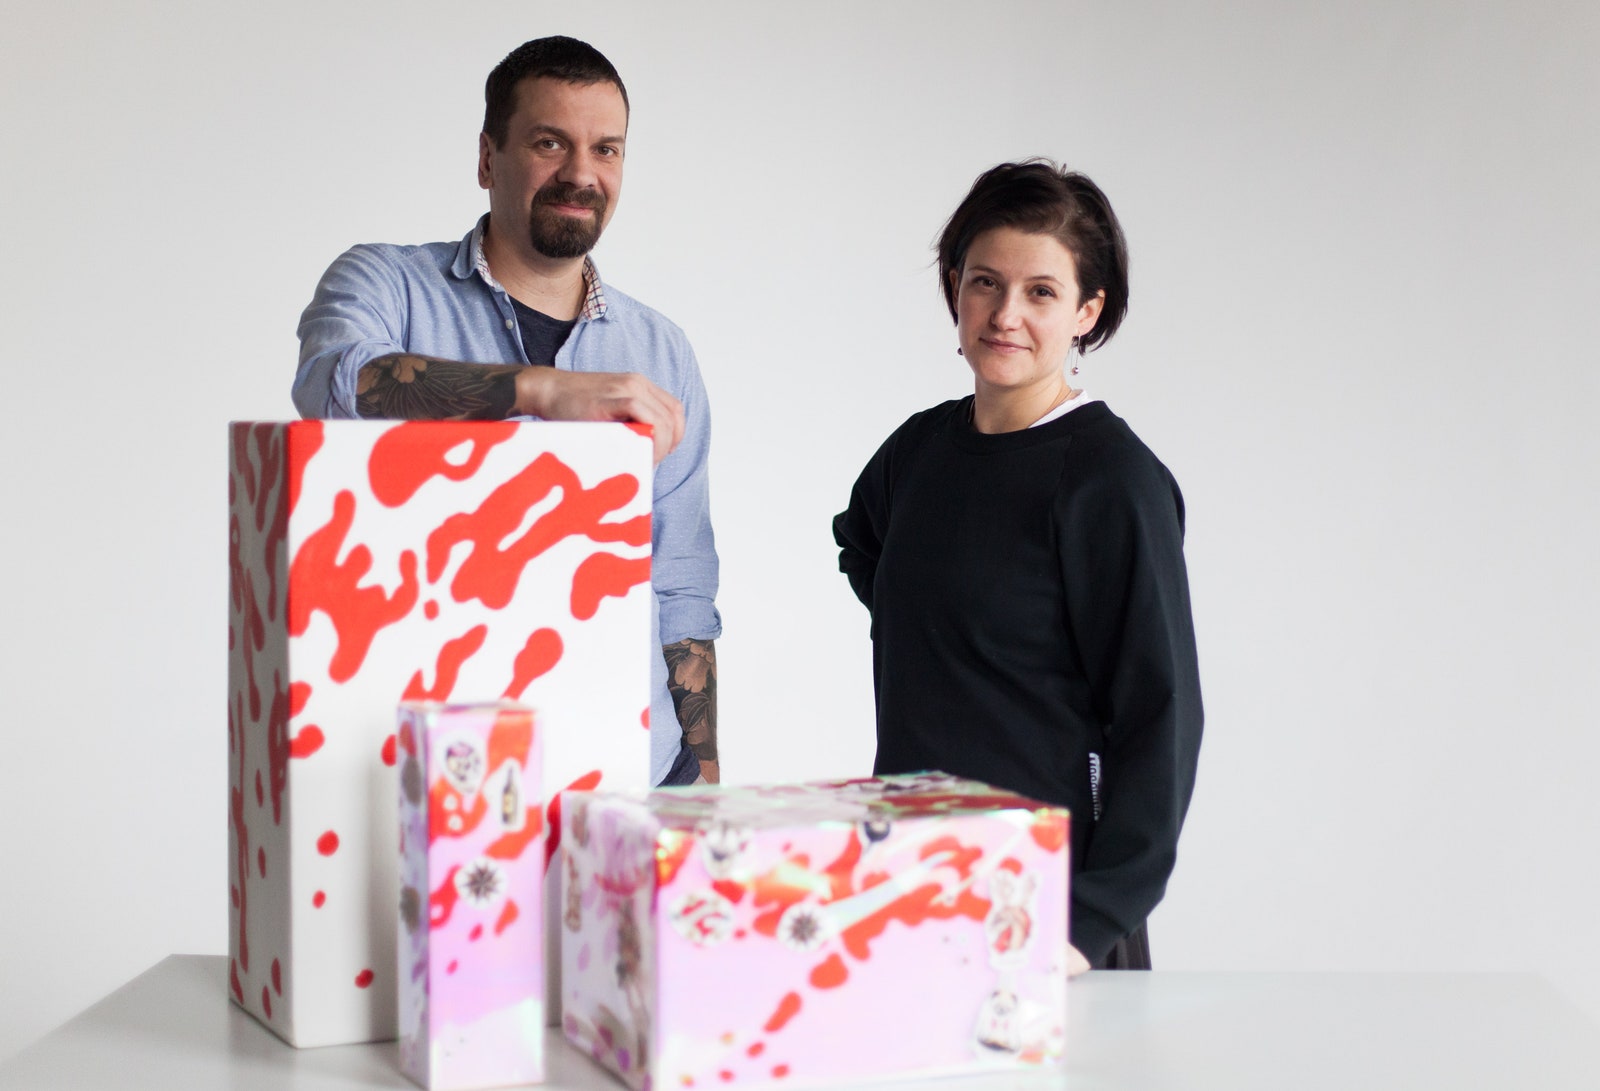 Как оформить новогодние подарки красиво Прохор Машуков и Ольга Седова показывают как упаковать искусство в подарок